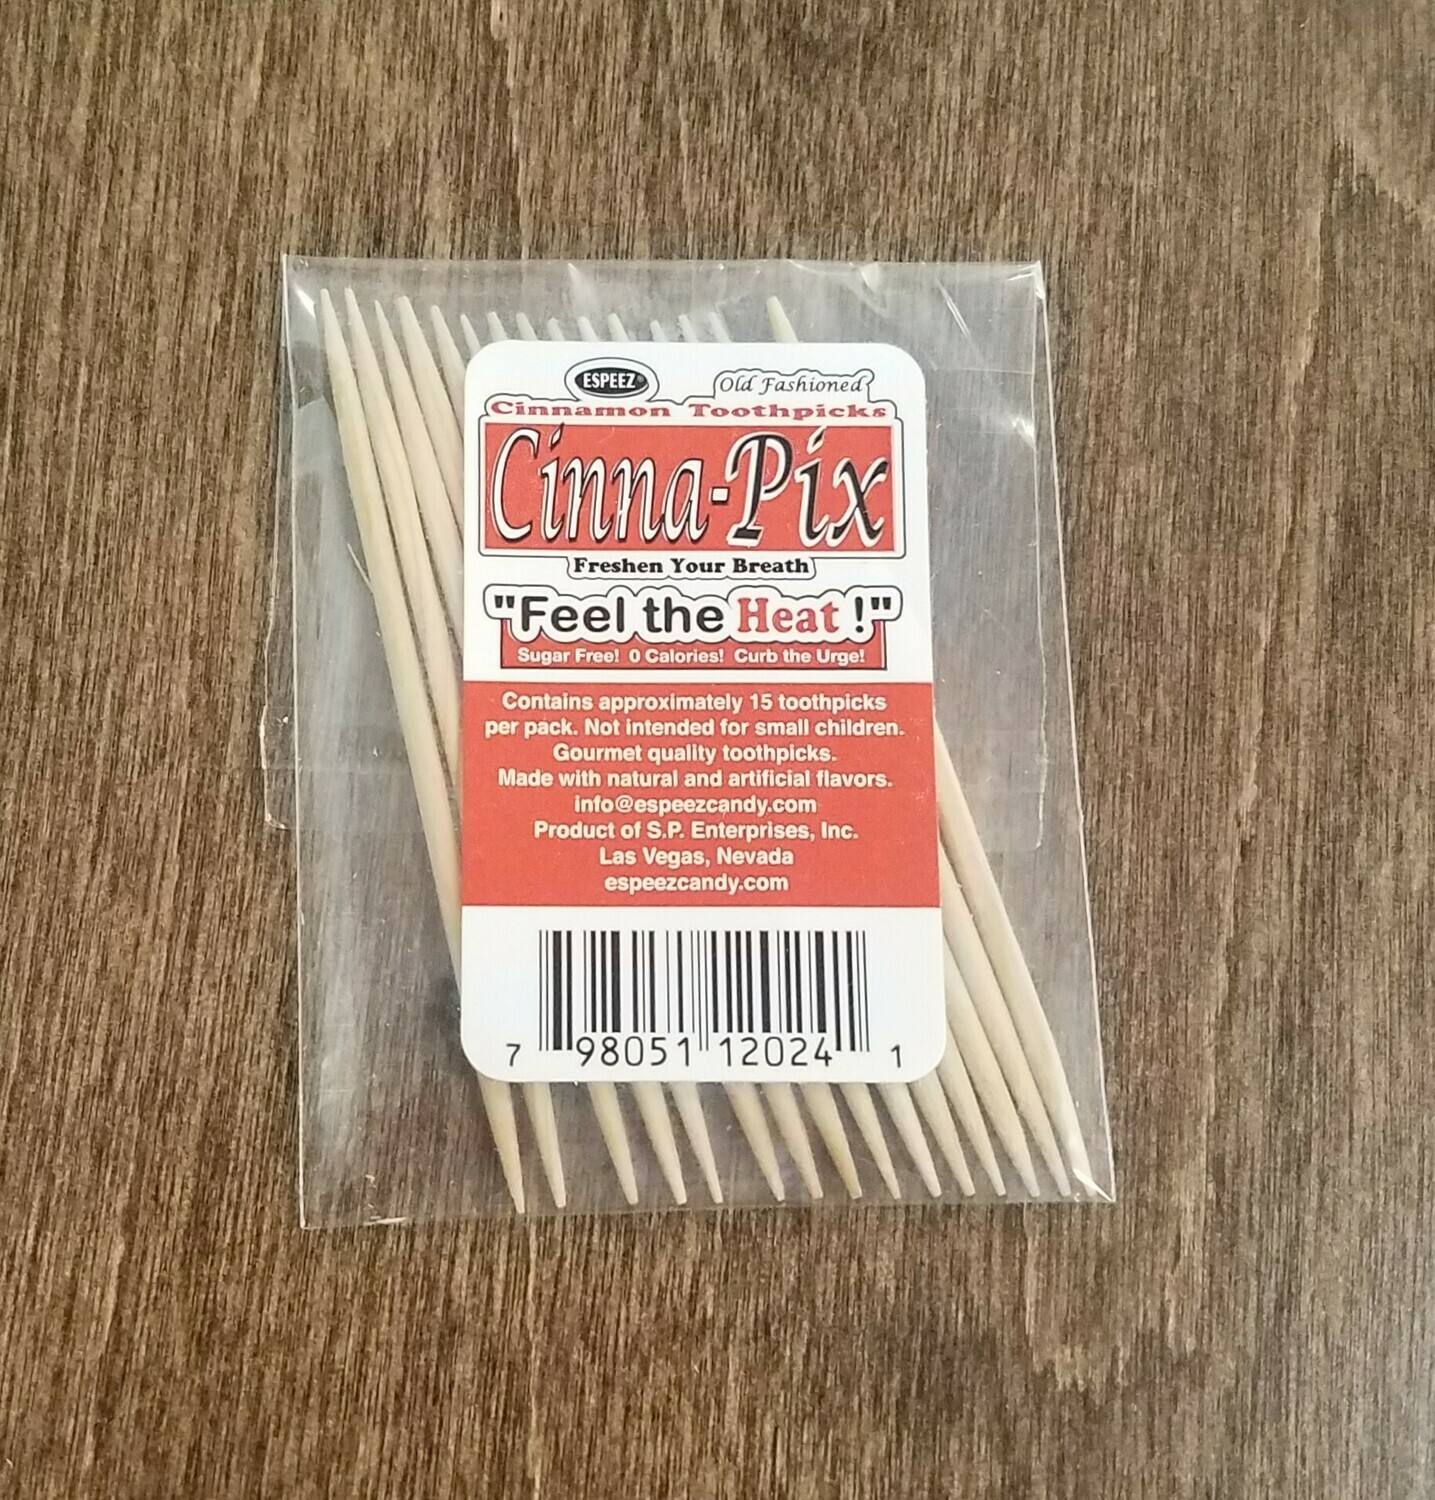 Cinna-Pix (Cinnamon Toothpicks)